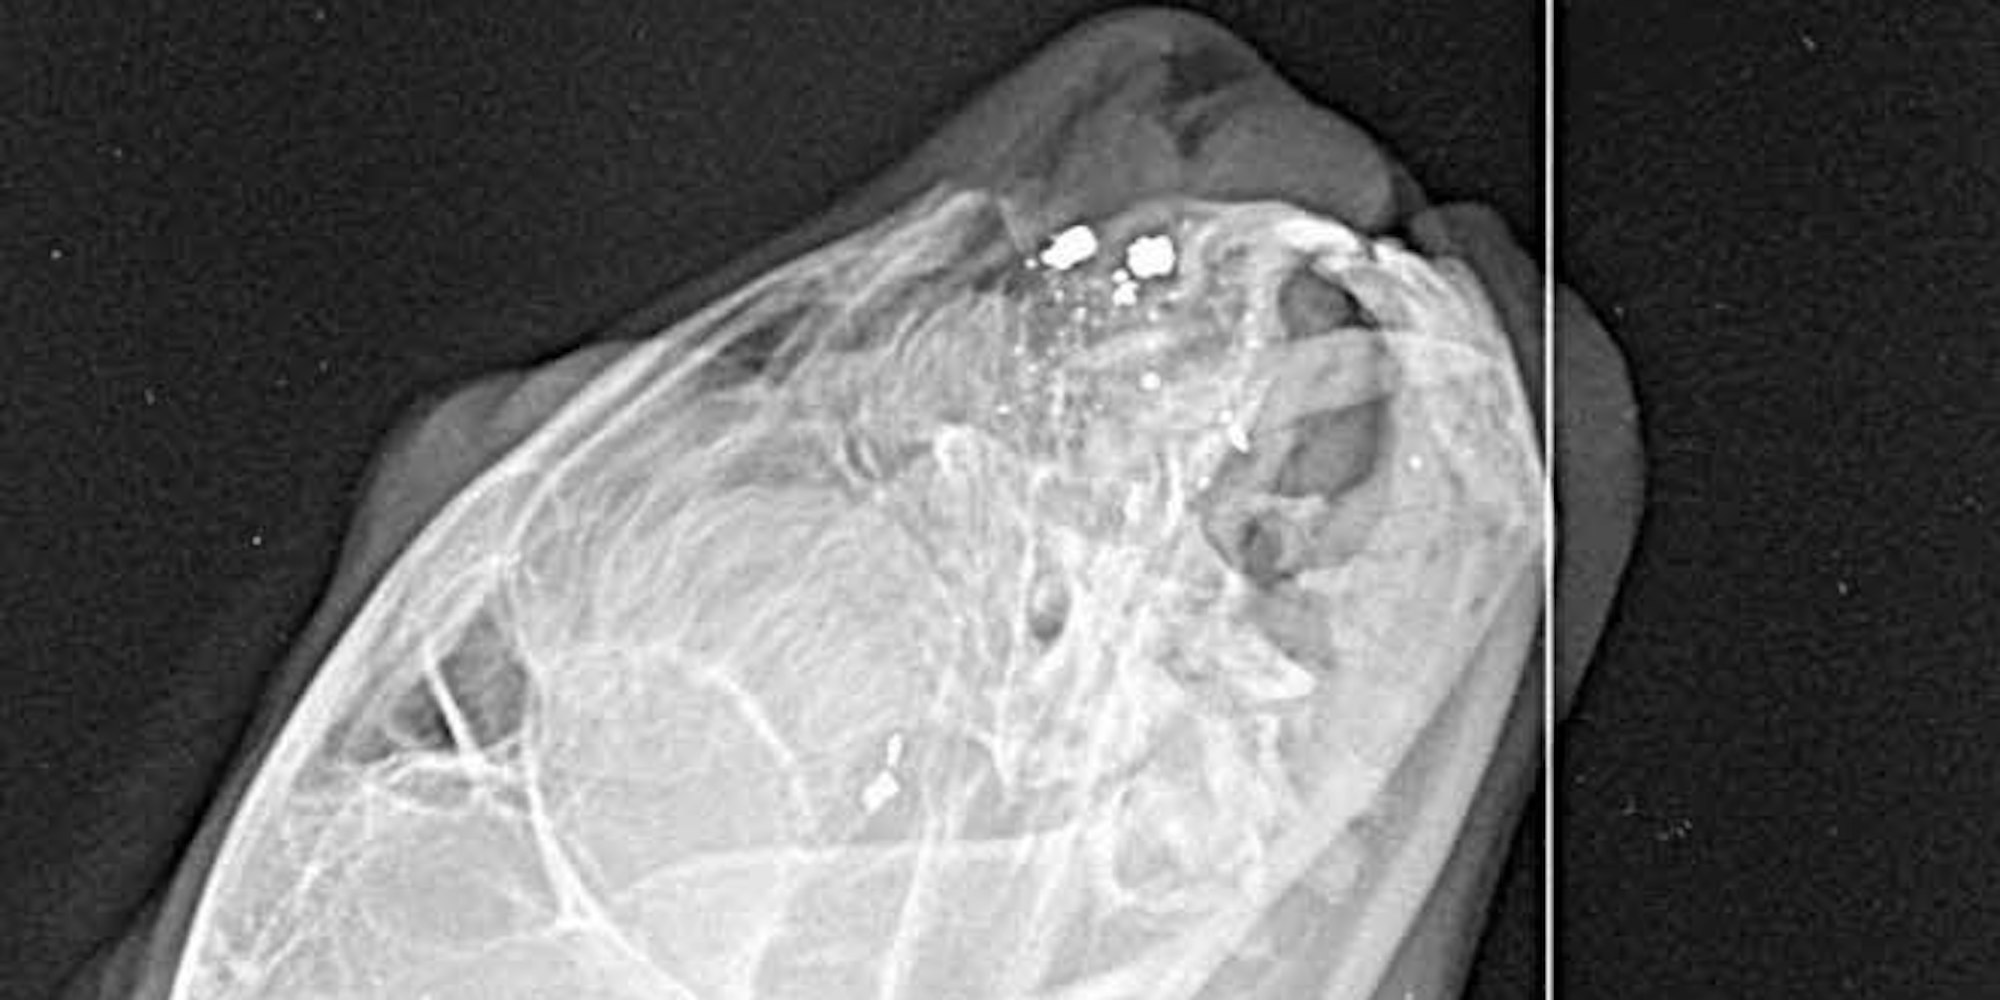 Einige Schrotkugeln (helle Punkte) im Kopf der Katze liegen so ungünstig, dass man sie nicht entfernen kann, wie das Röntgenbild zeigt.